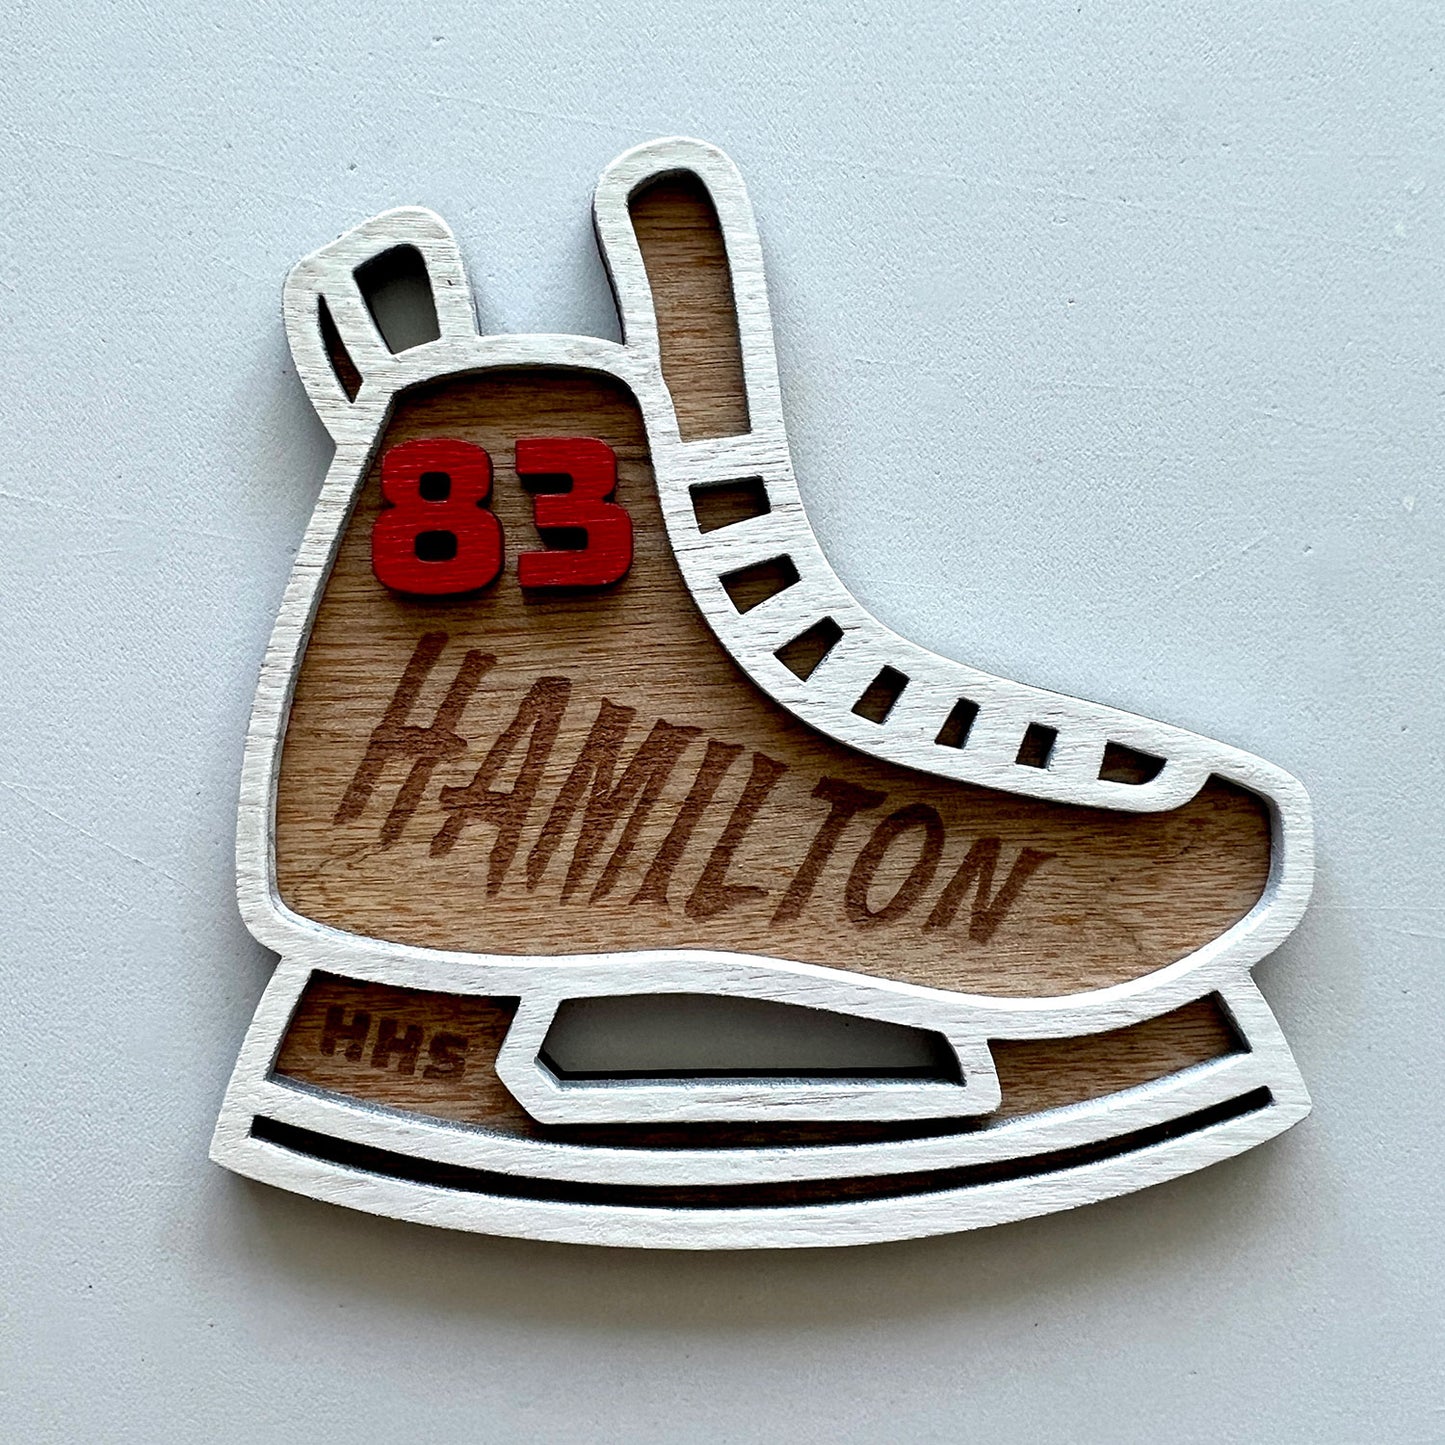 Personalized Hockey Skate Bag Tag - Hockey Skate Ornament